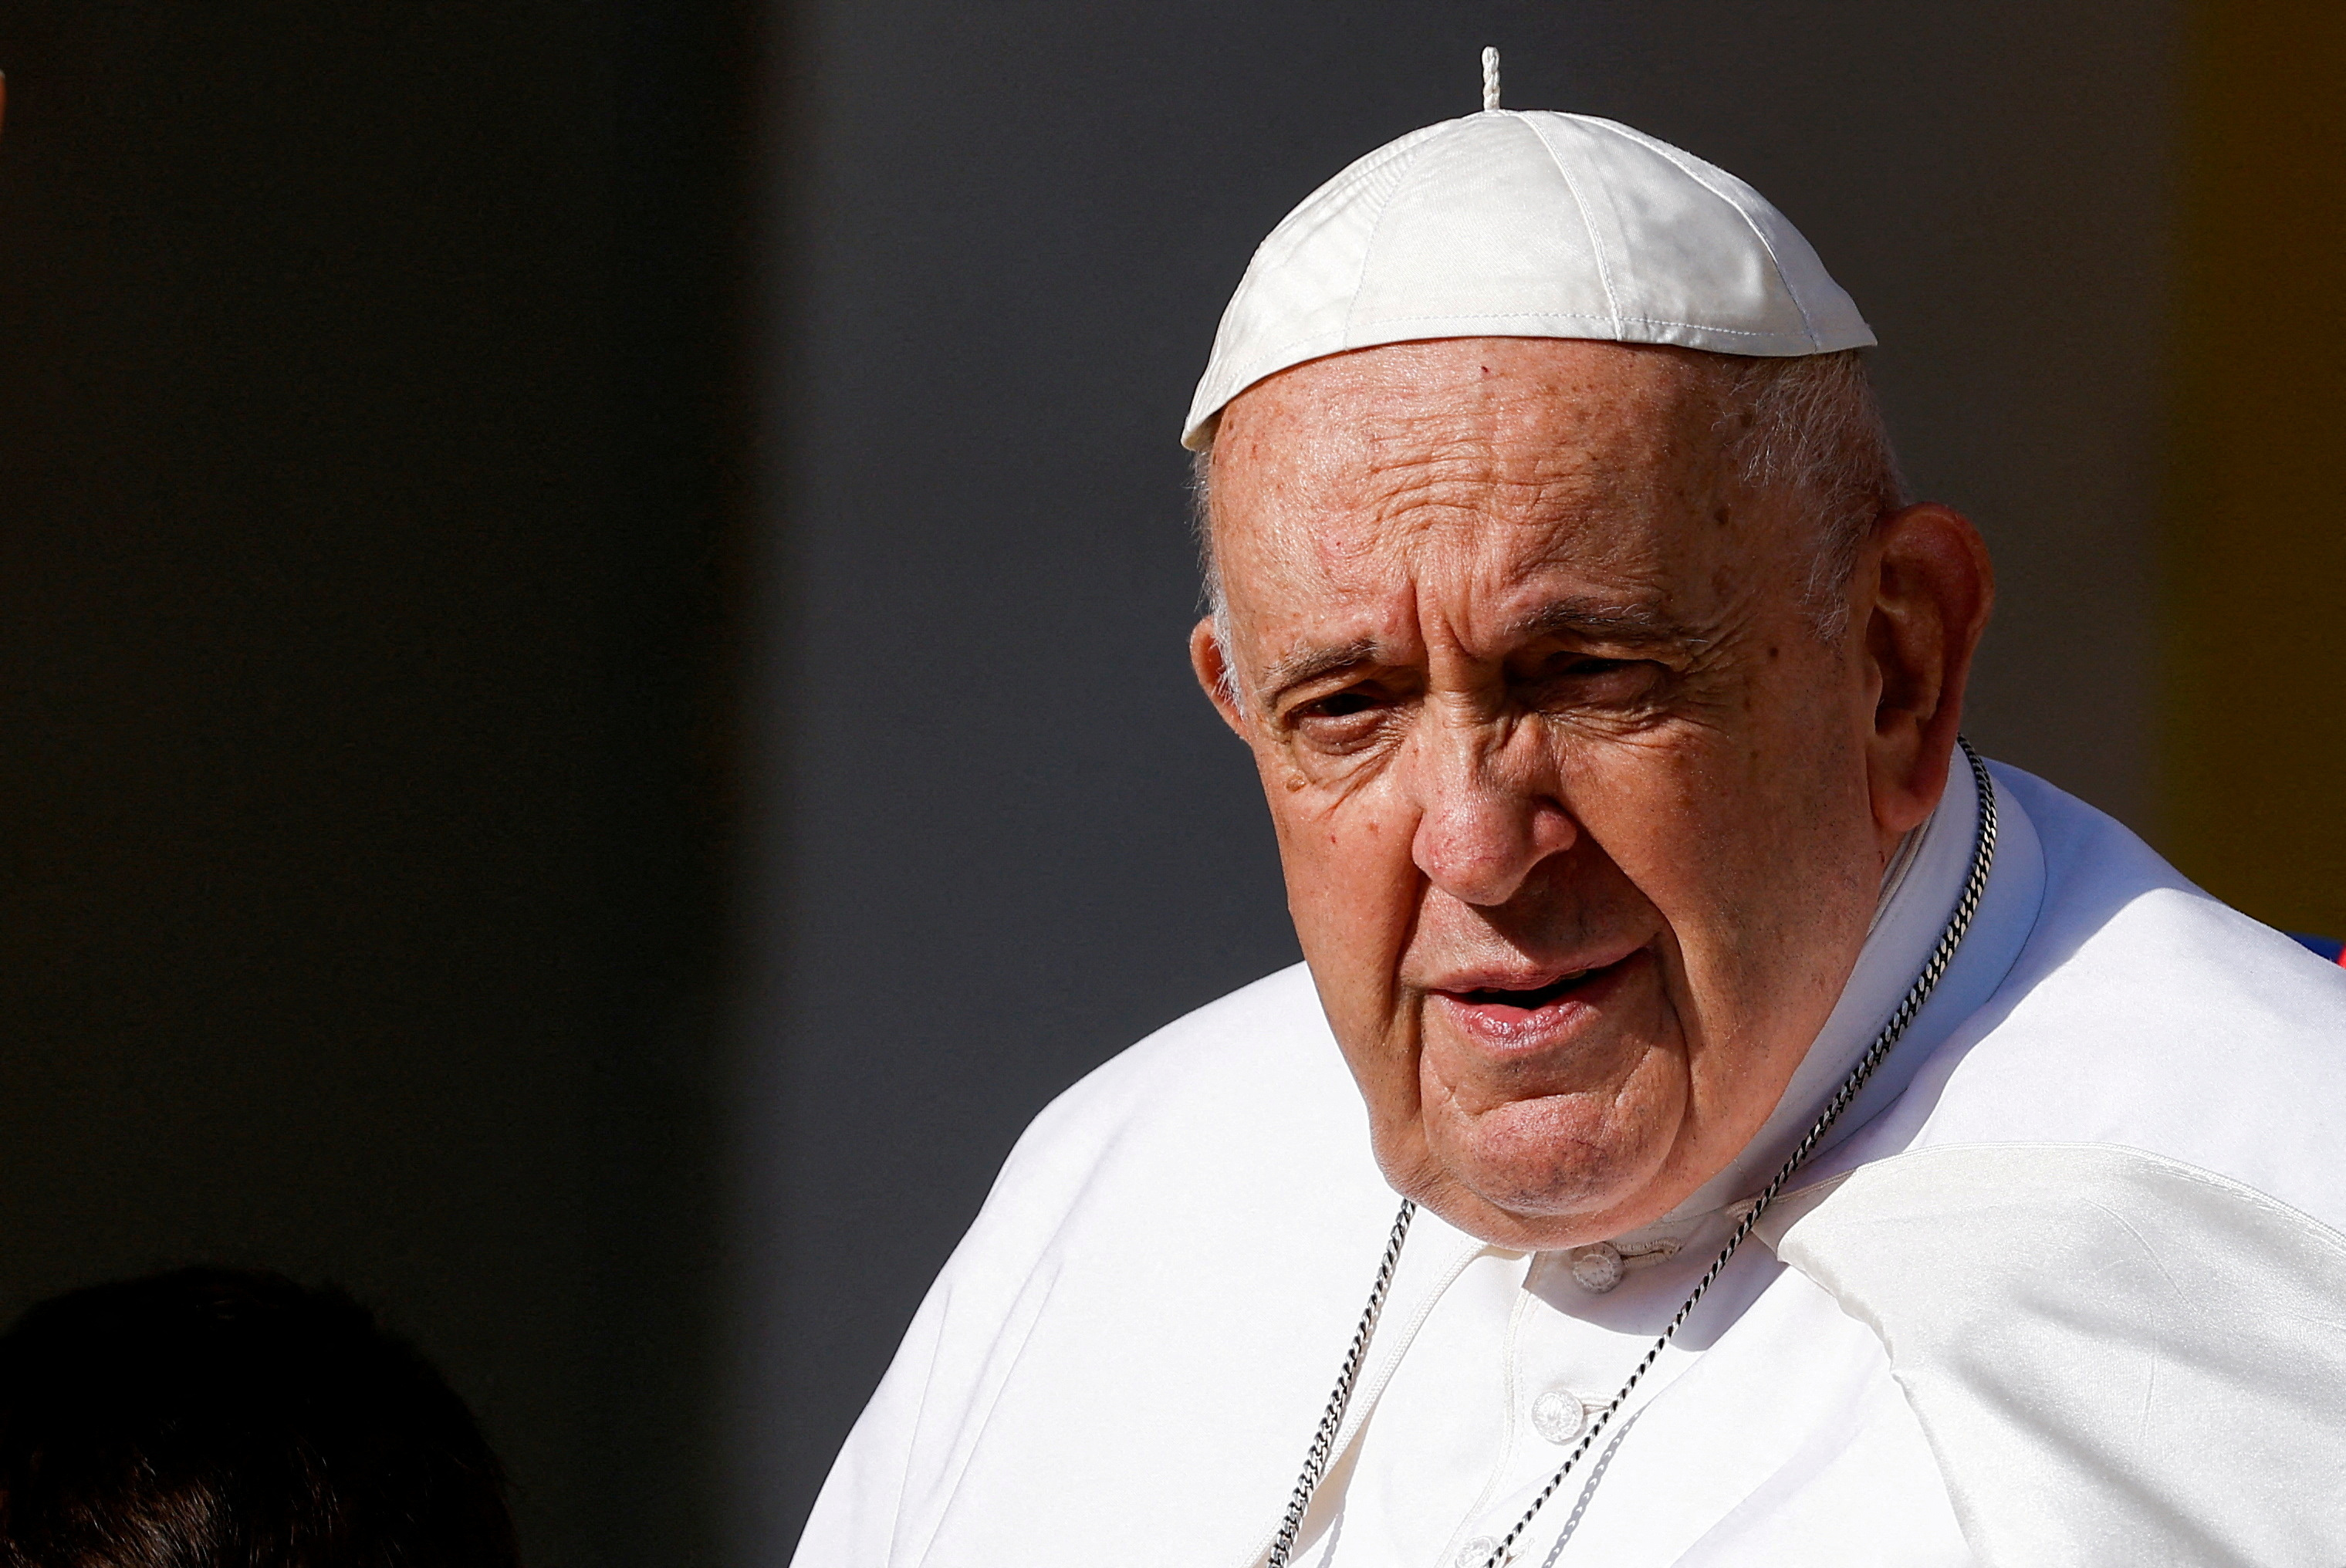 El papa Francisco viajará a Portugal en pleno escándalo sobre abusos en la Iglesia